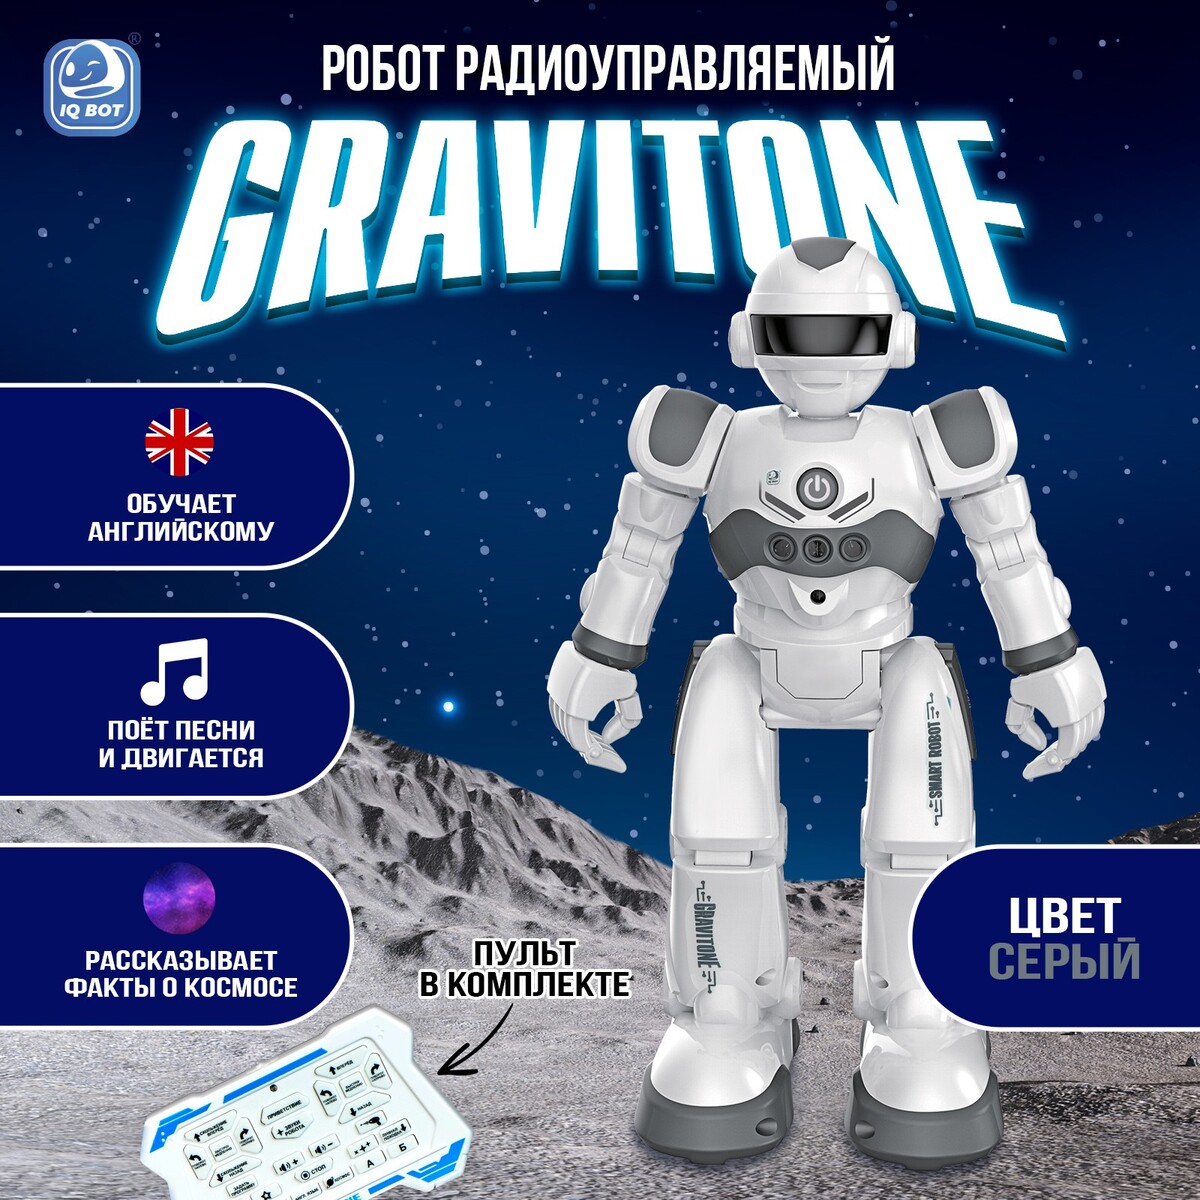 Робот радиоуправляемый iq bot gravitone, русское озвучивание, цвет серый робот радиоуправляемый iq bot gravitone русское озвучивание красный